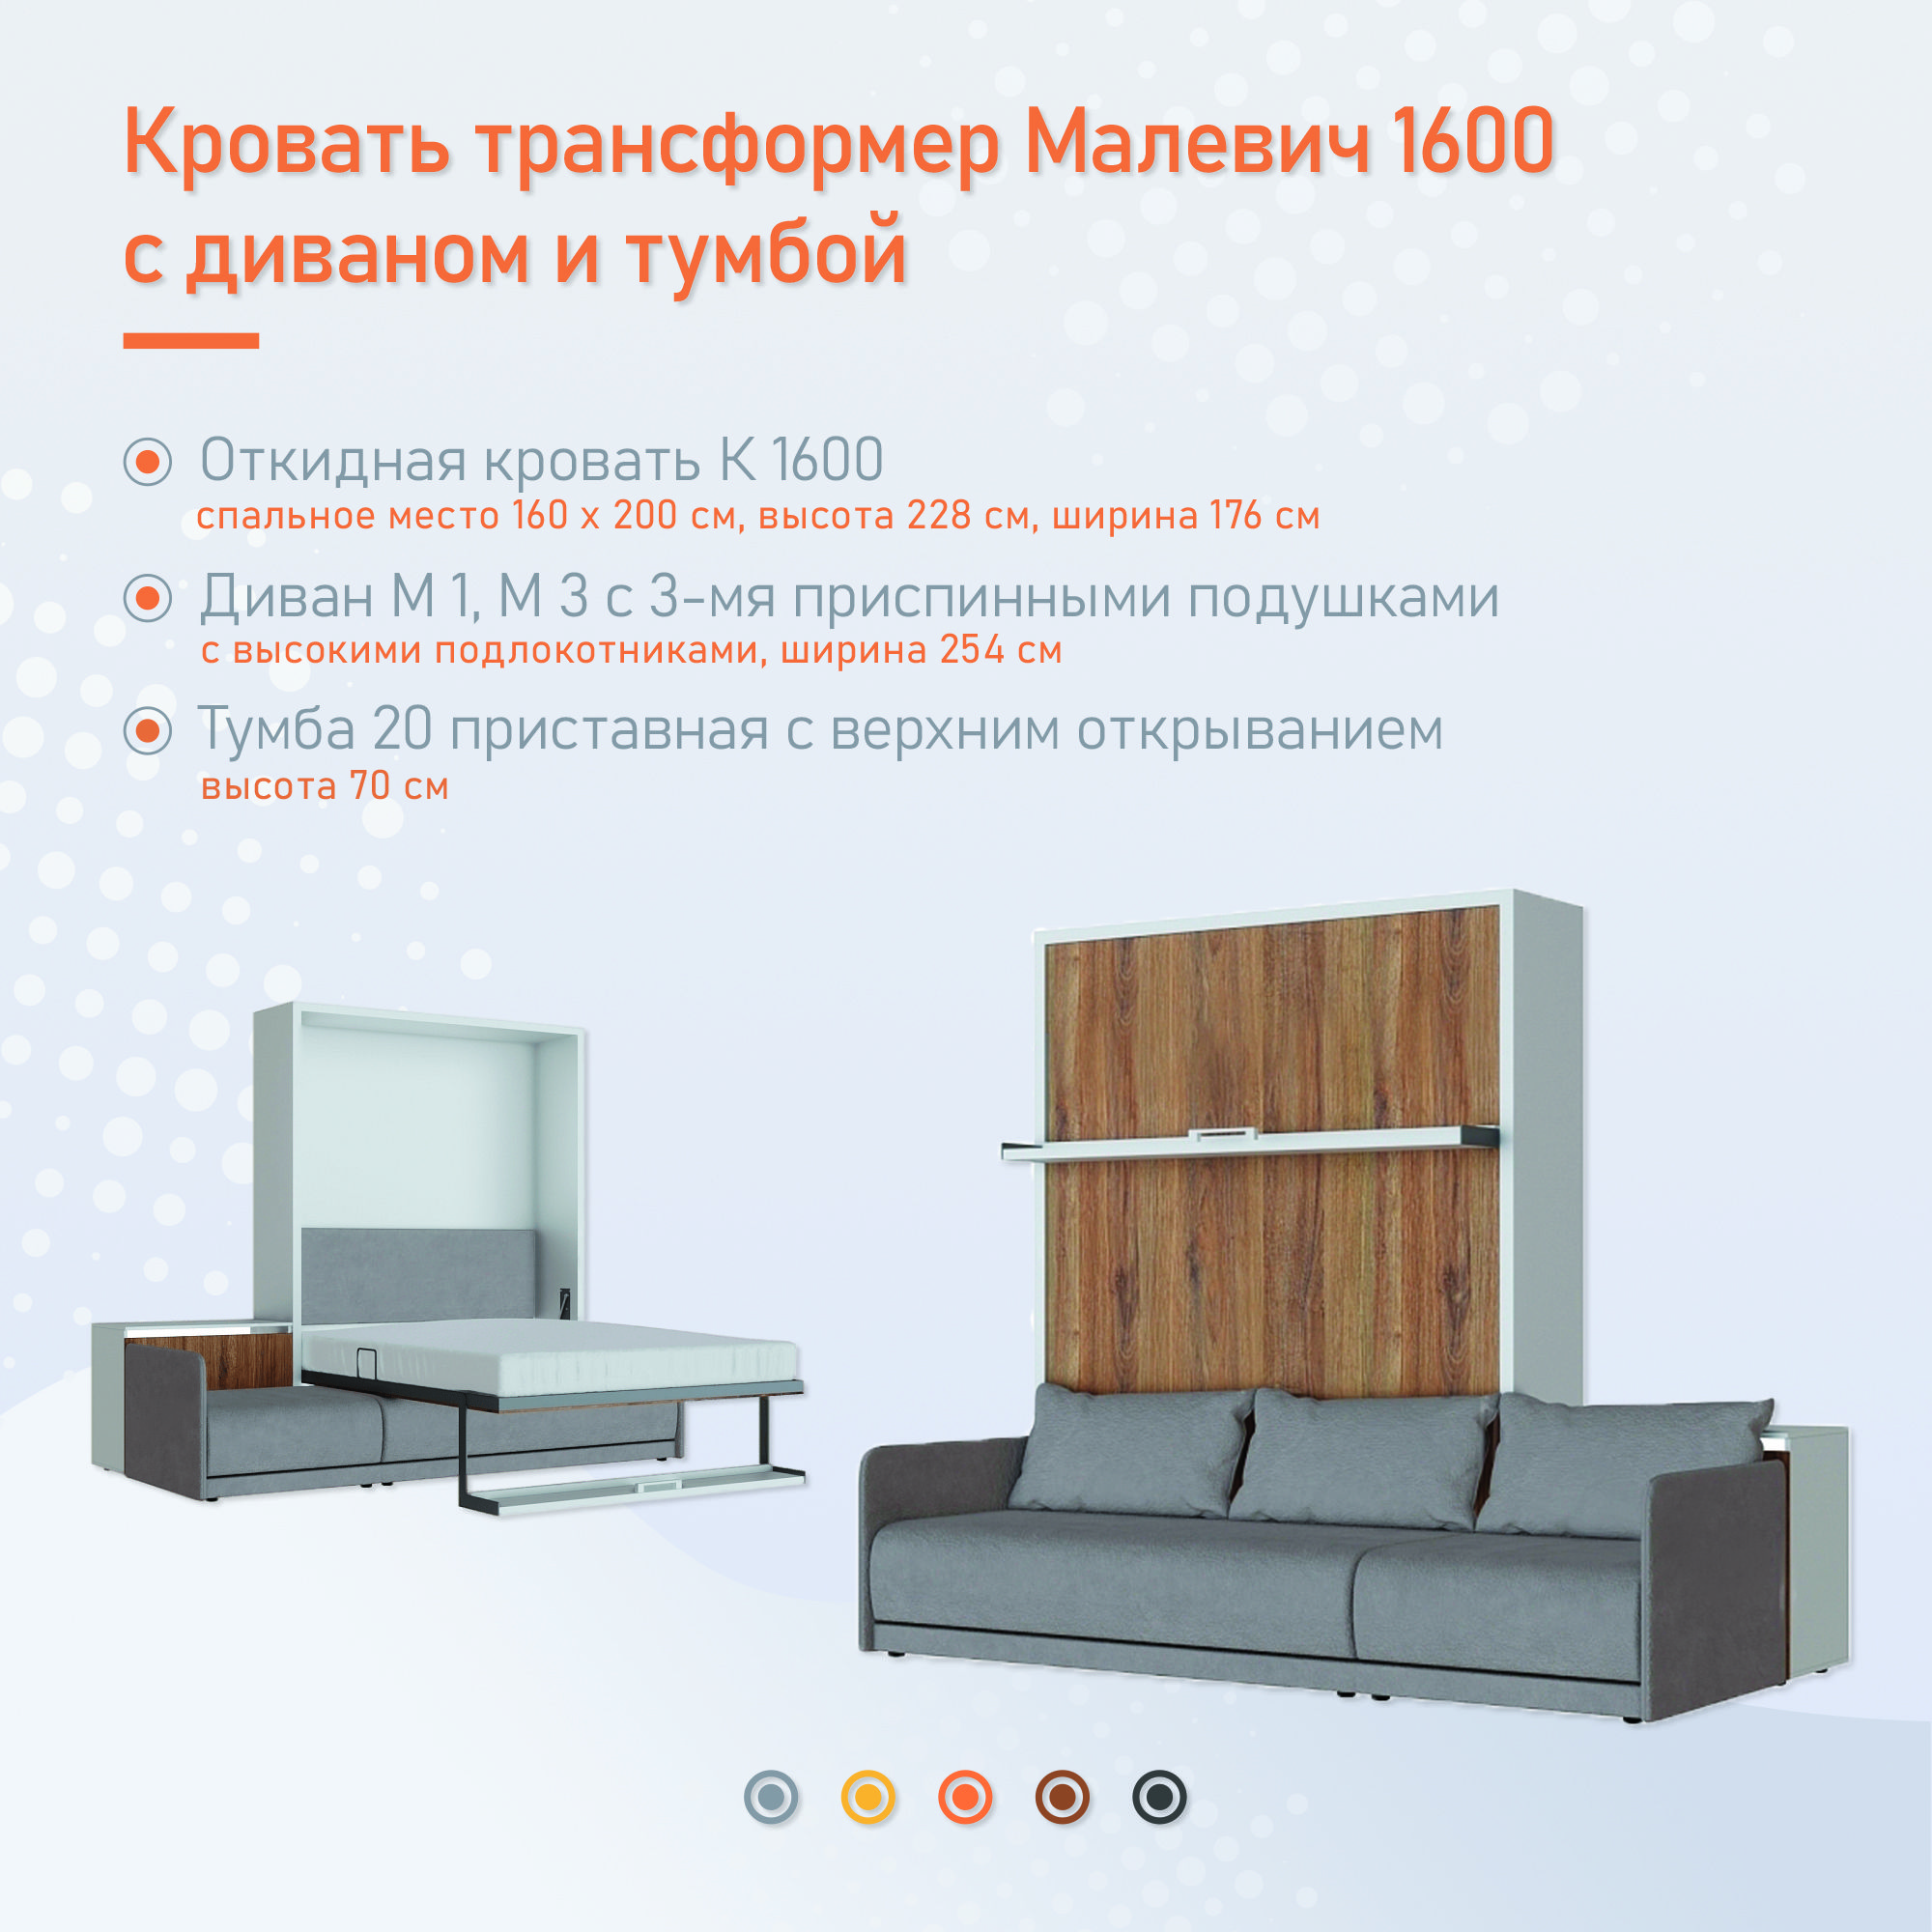 Кровать трансформер Малевич 1600 с диваном и тумбой